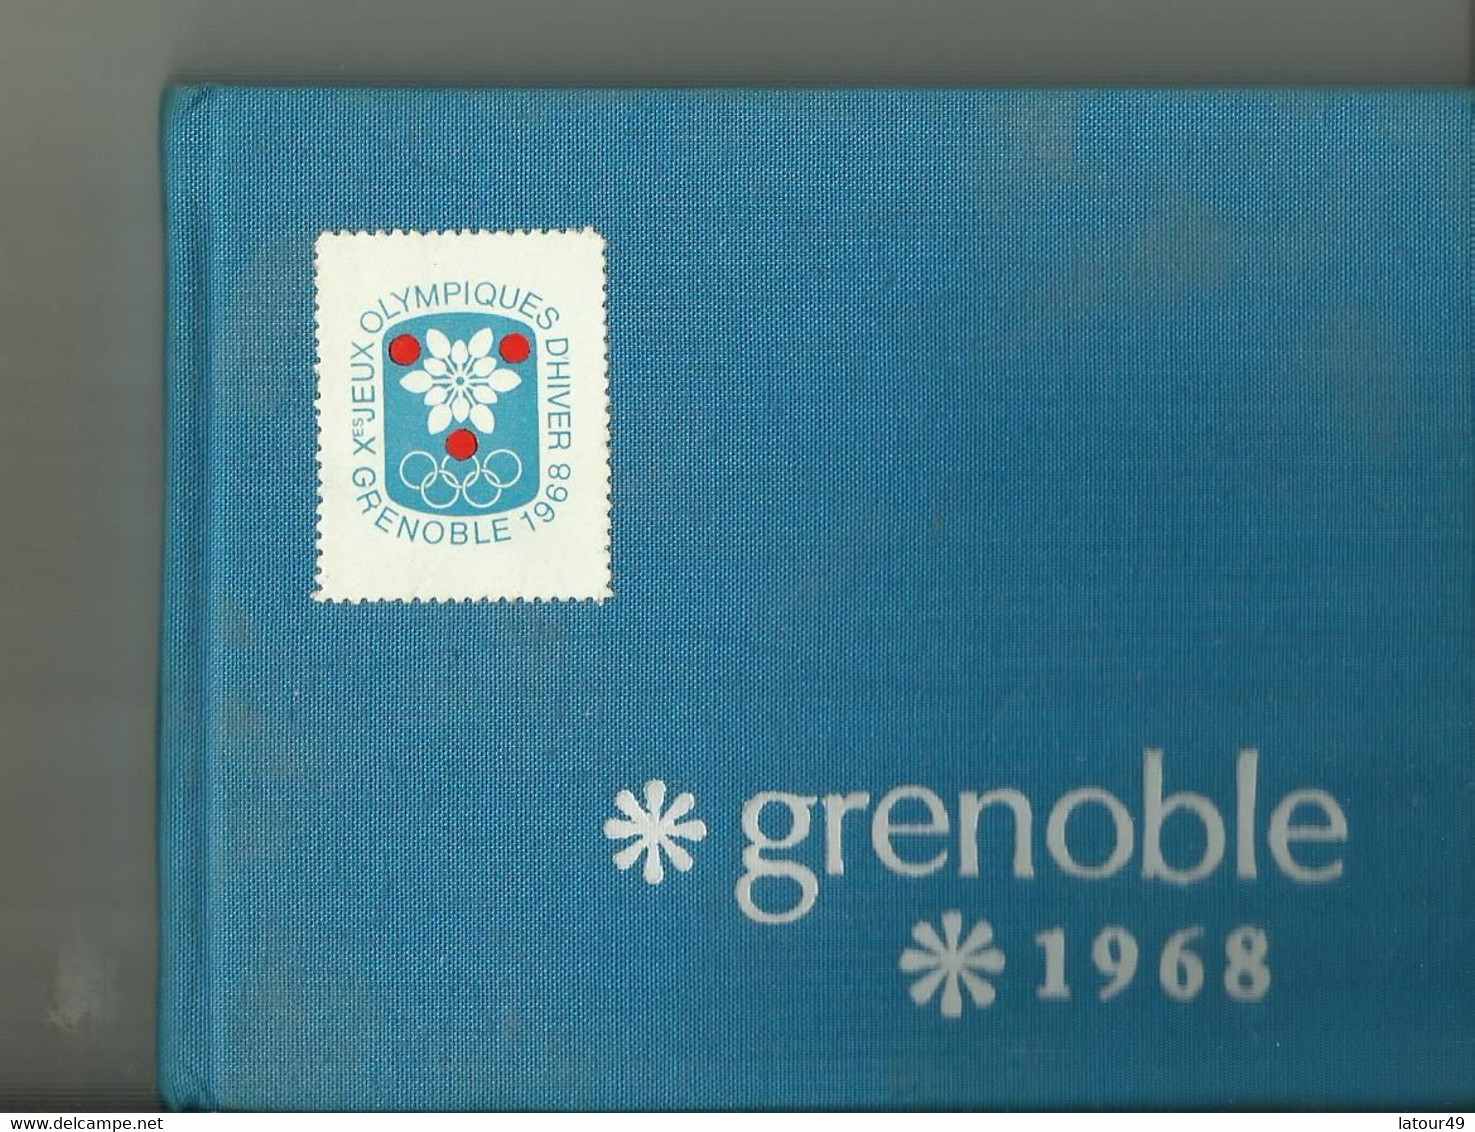 Jeux Olympique Grenoble1968  Autographes Pologne.jozet Kocjan Crwin Fredor Etc. Norvege Bjorn Wirkola Porte Drapeau Etc - Autógrafos